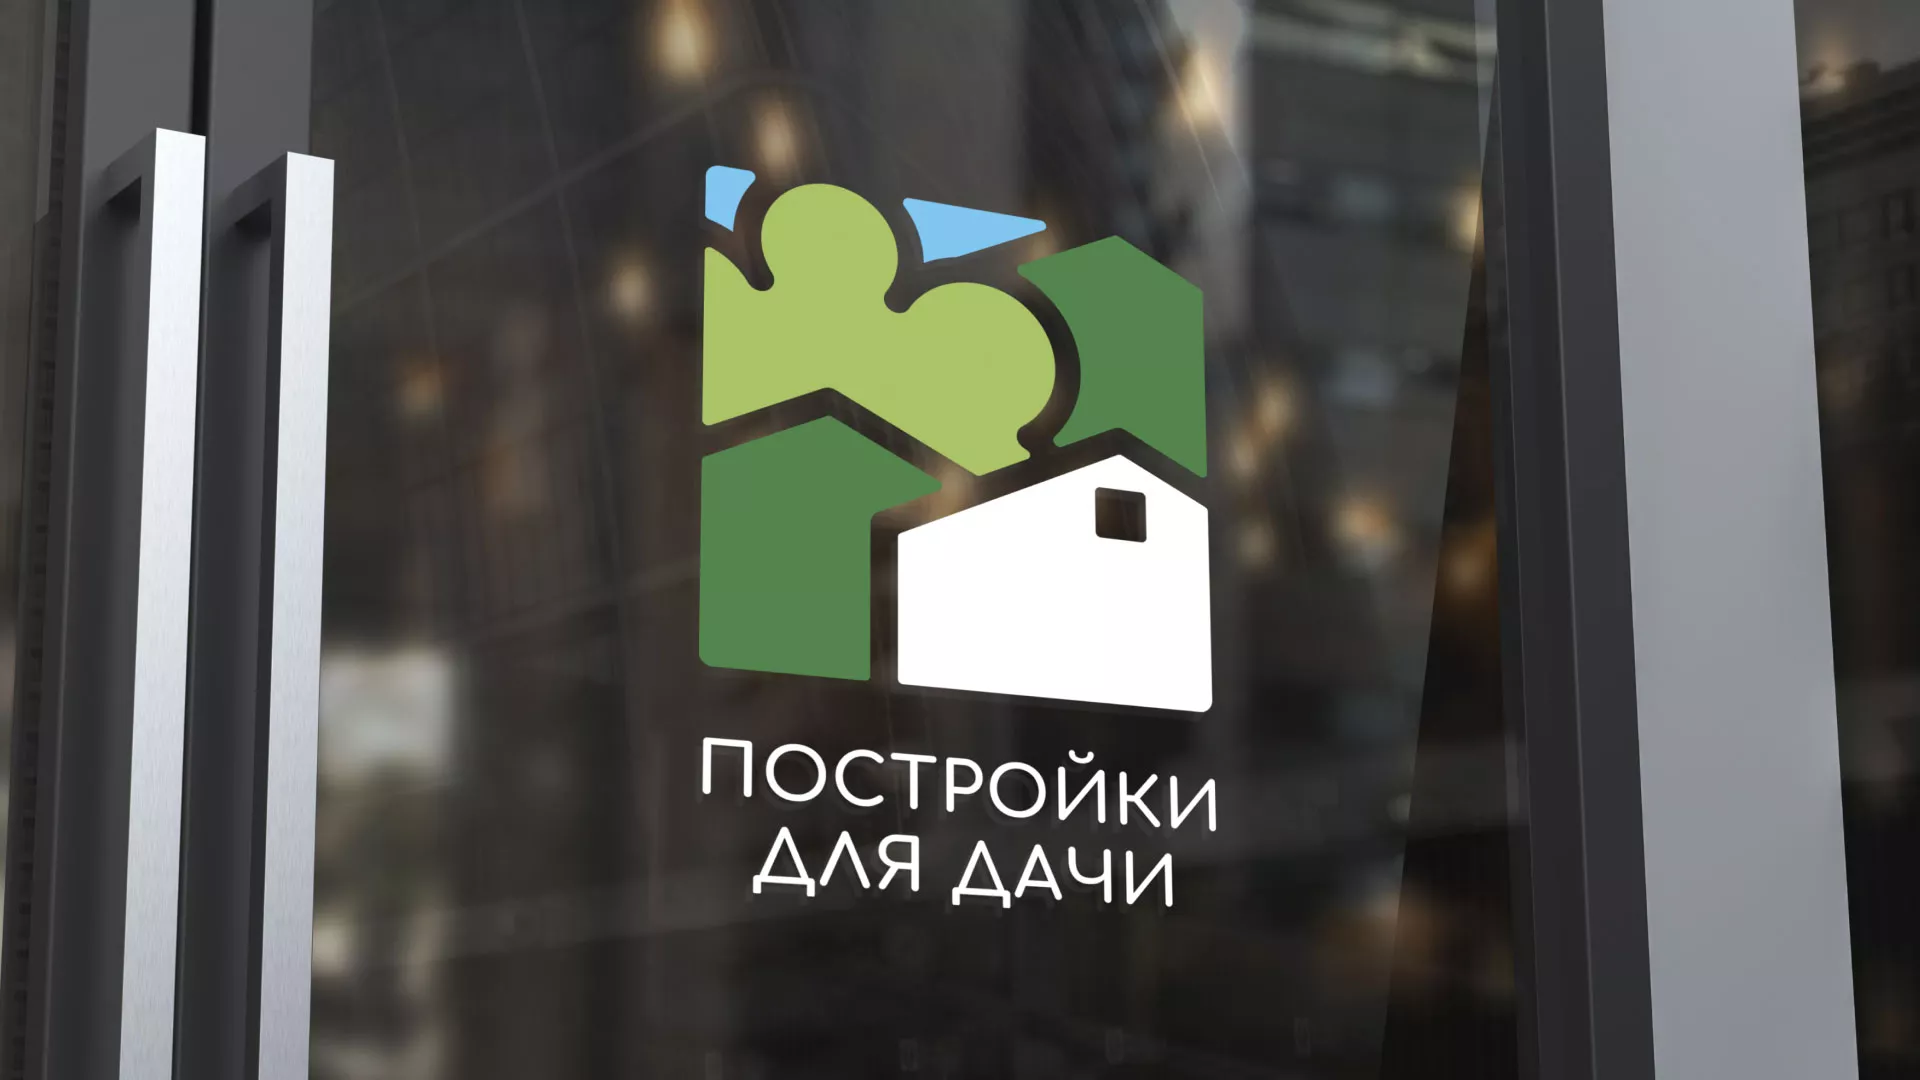 Разработка логотипа в Таре для компании «Постройки для дачи»